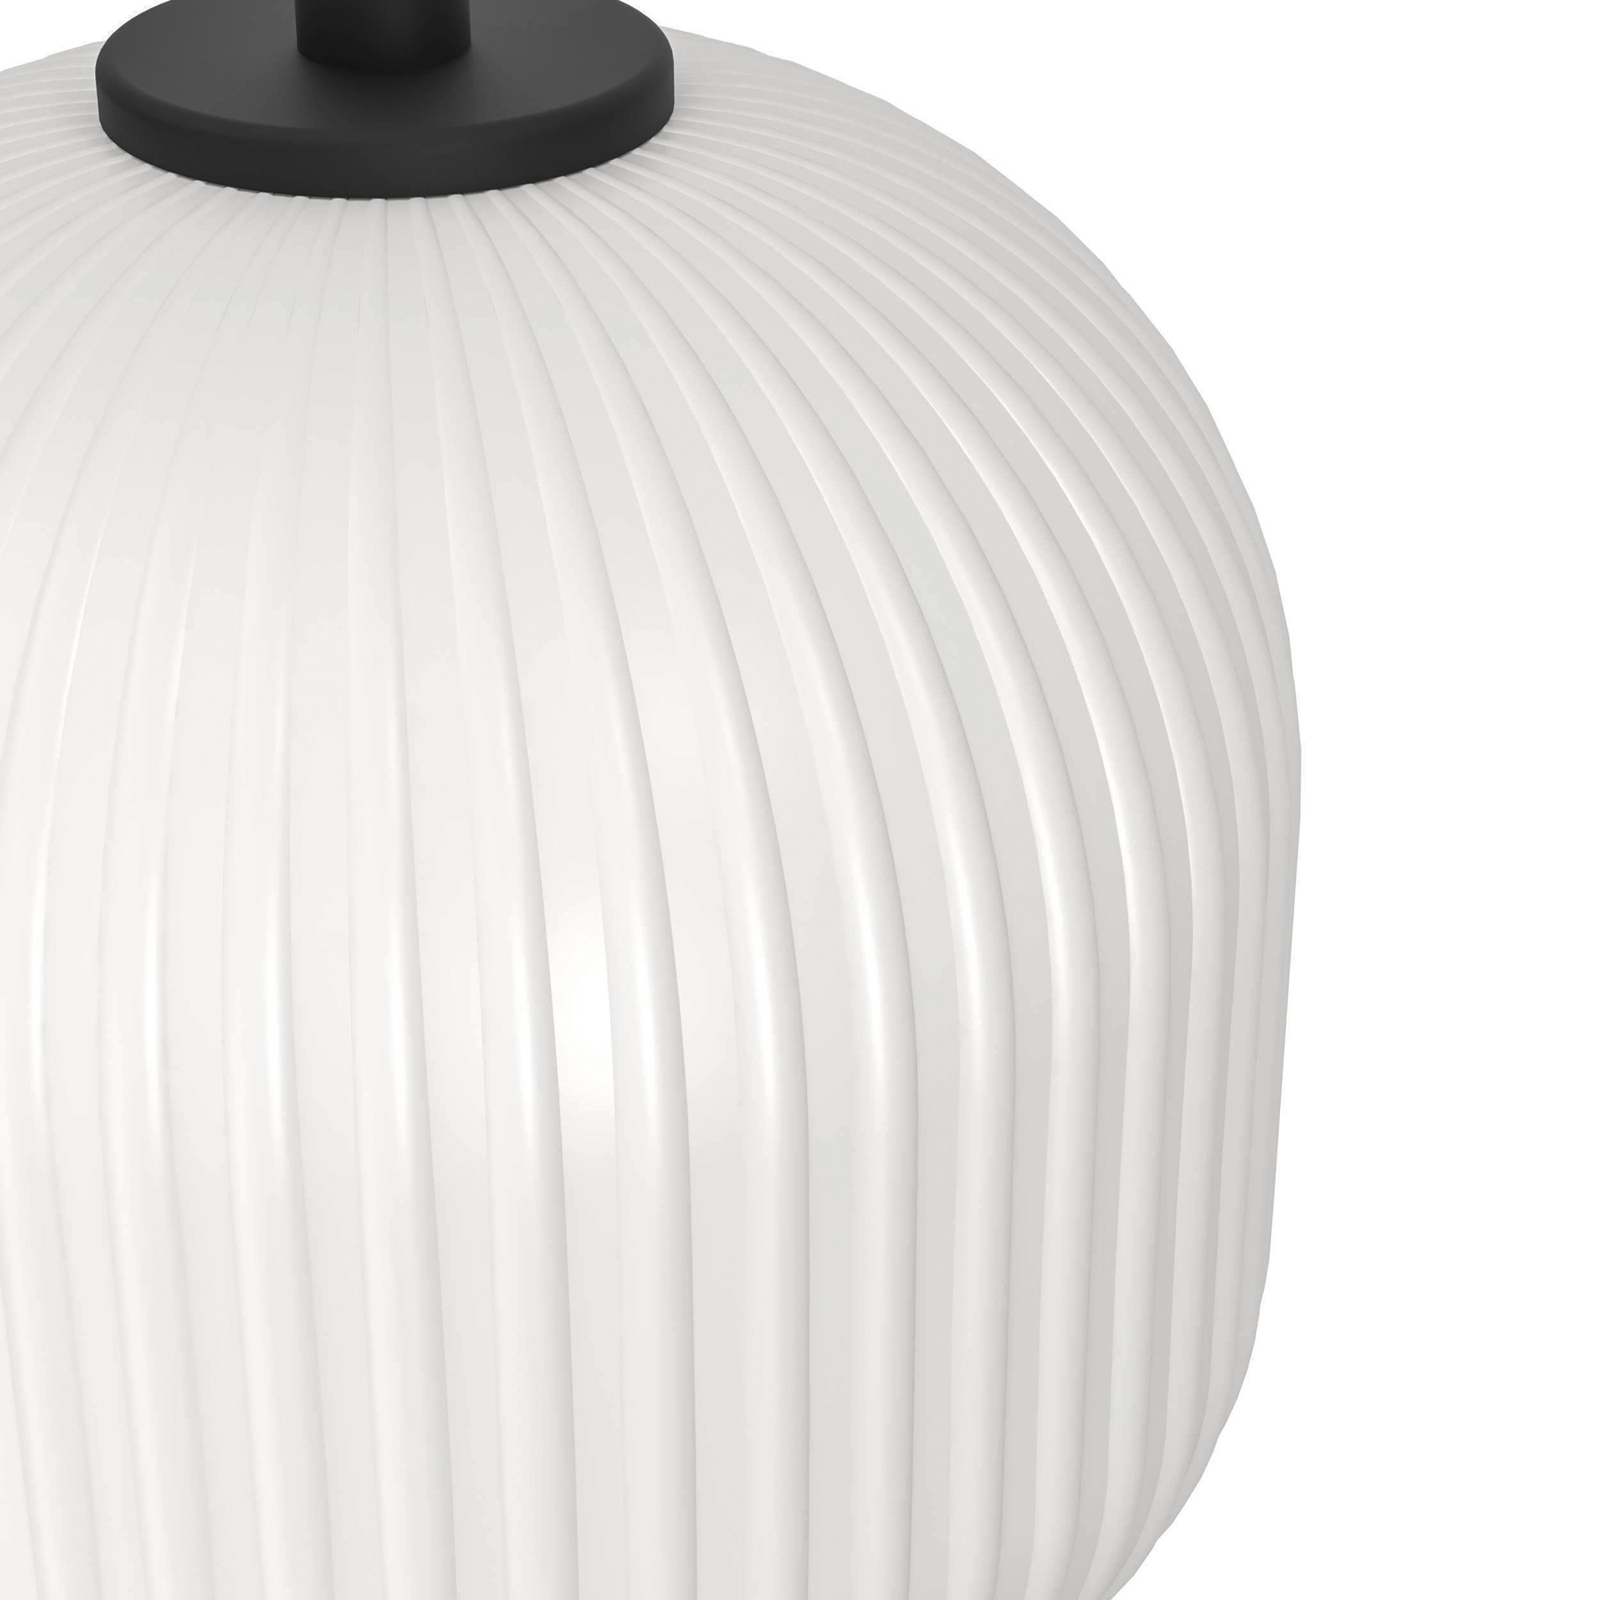 Mantunalle viseća svjetiljka, Ø 62 cm, crno/bijela, 3 žarulje.